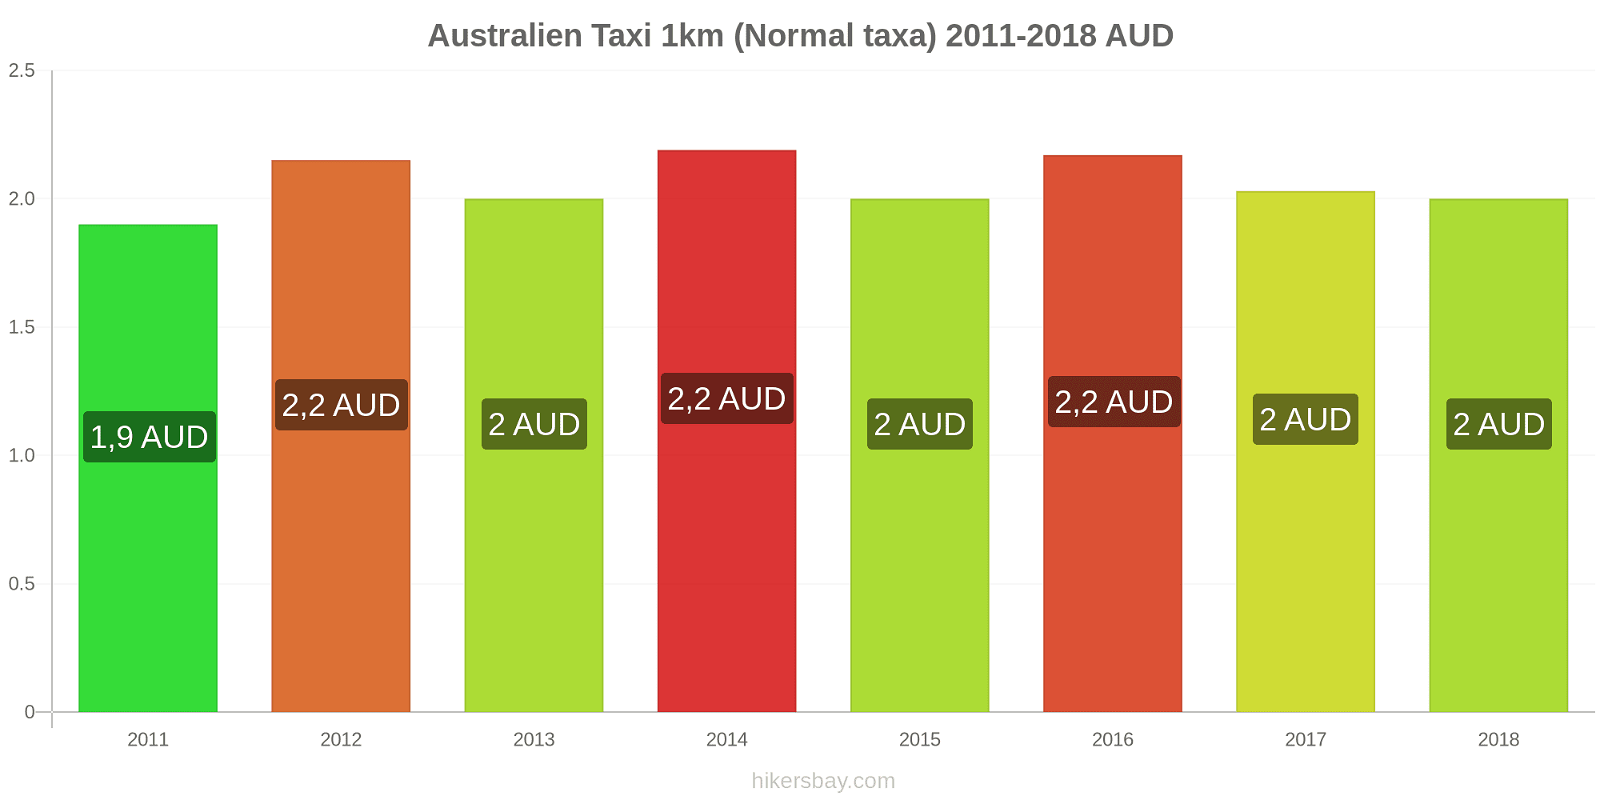 Australien prisändringar Taxi 1km (Normal taxa) hikersbay.com